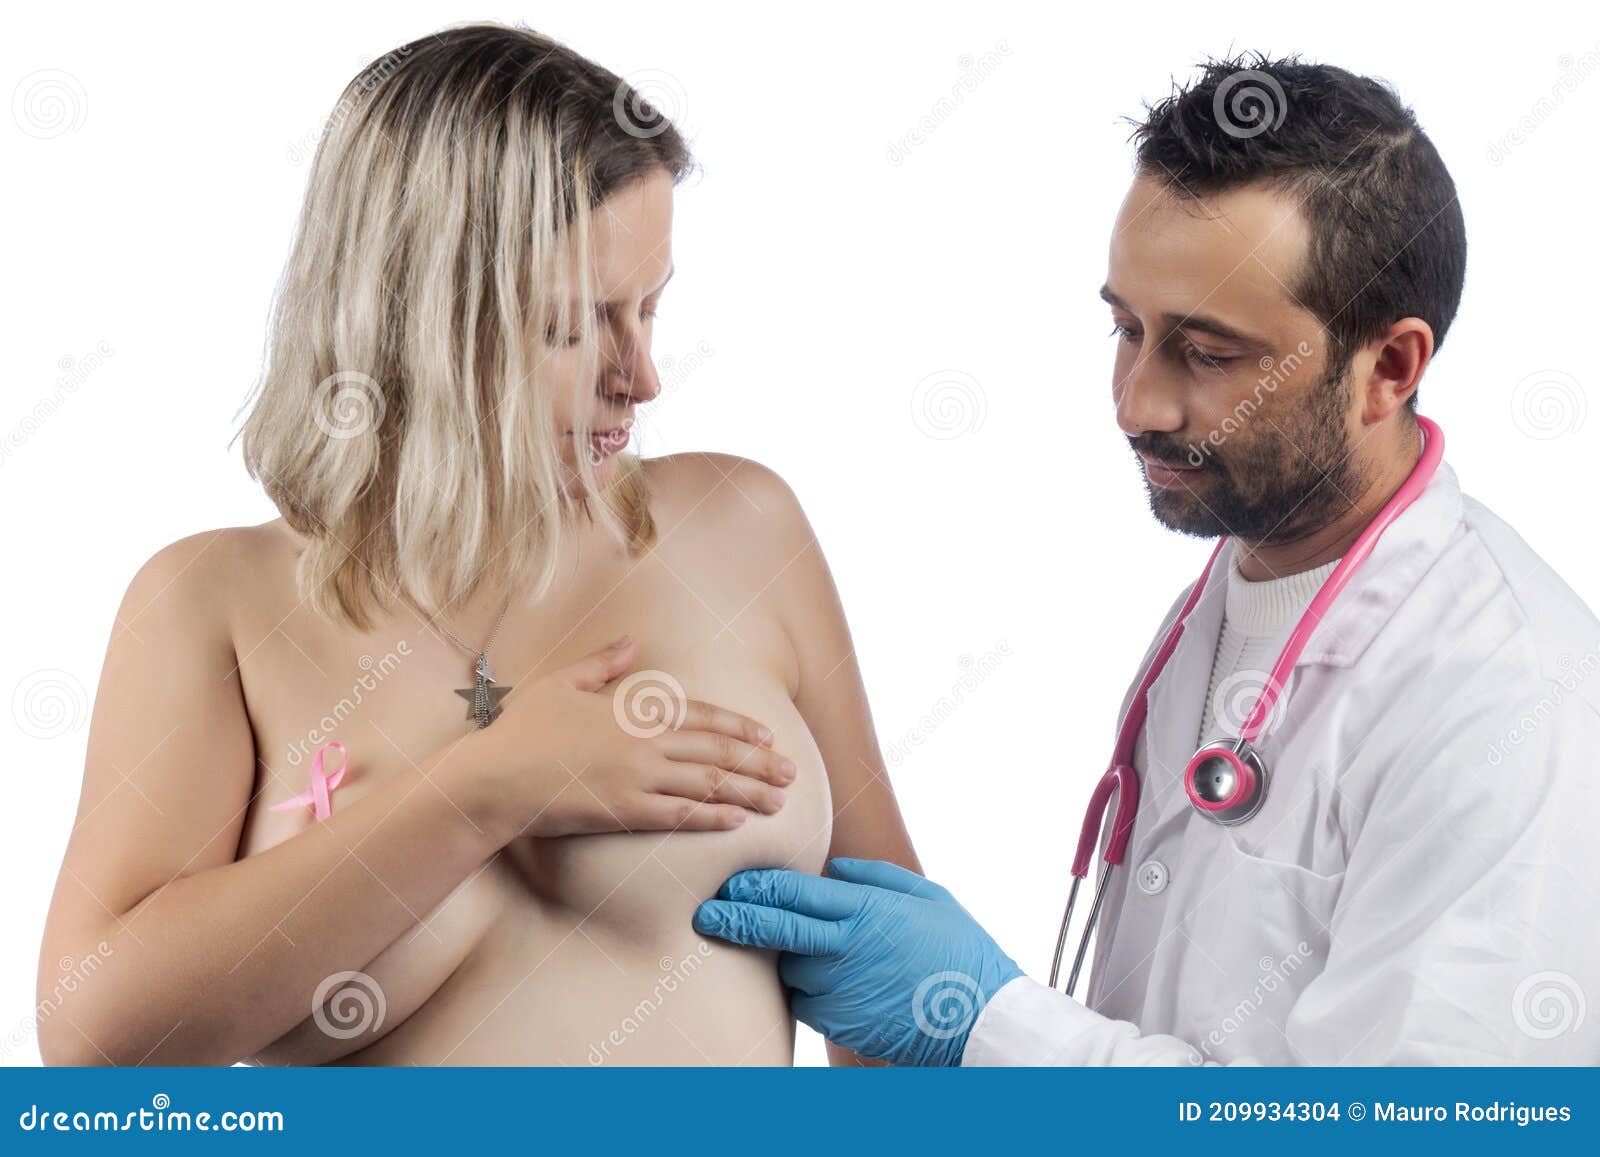 у врача показать грудь (120) фото